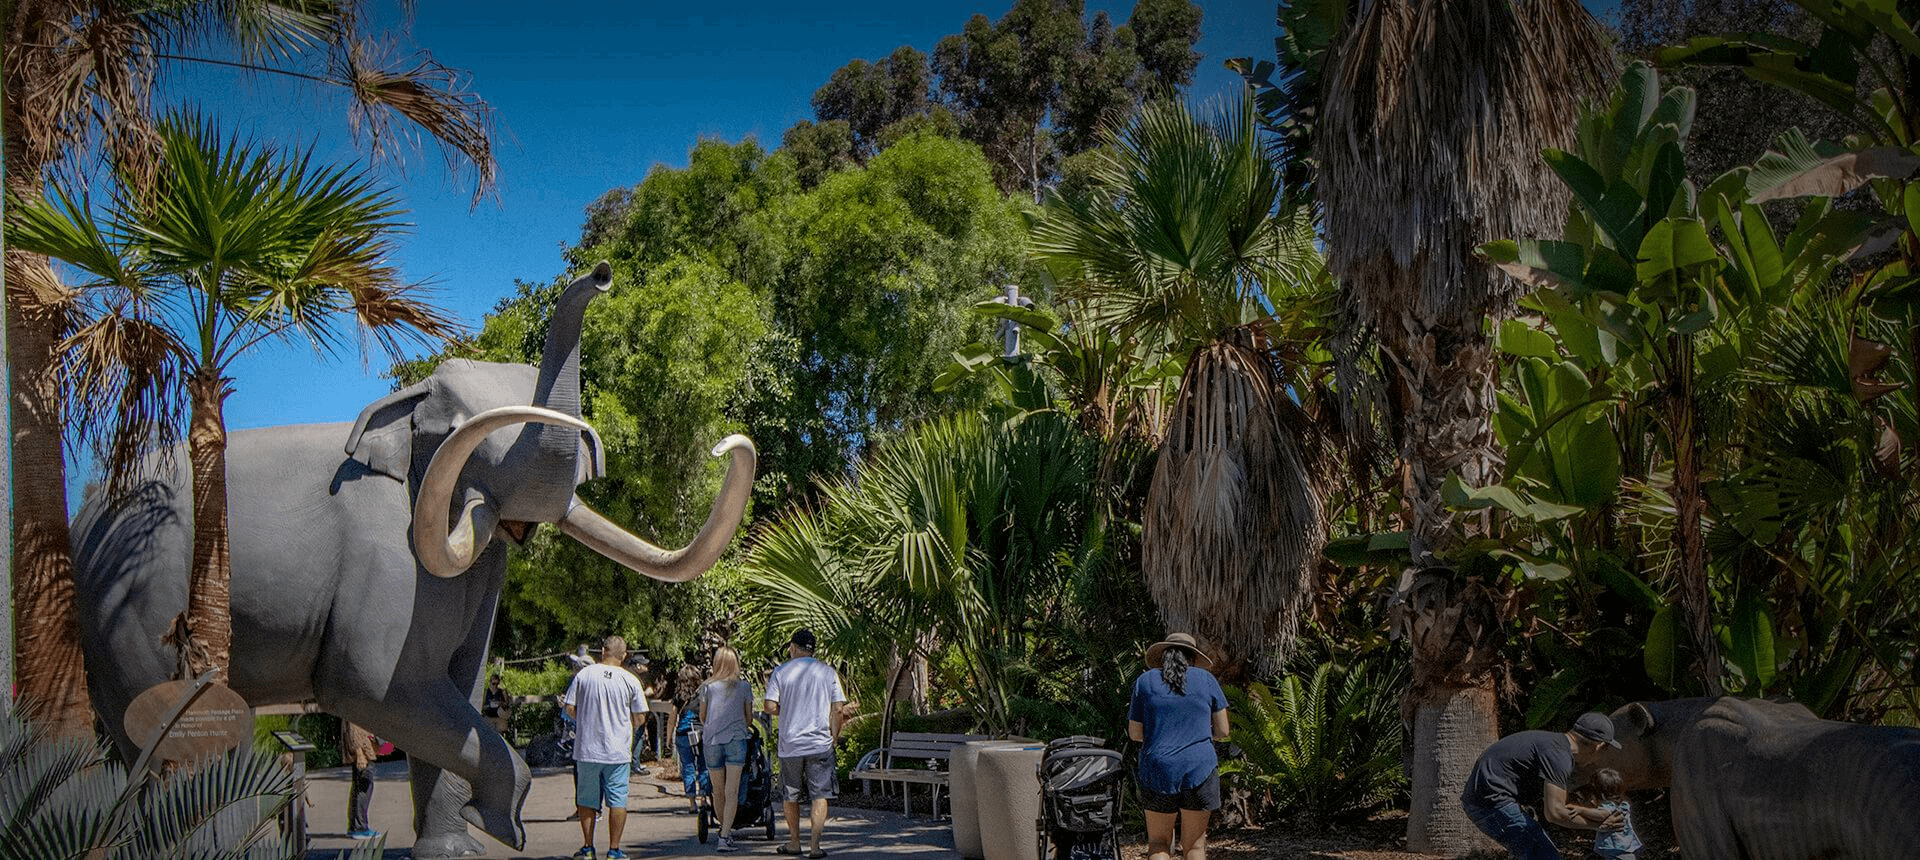 San Diego Zoo – San Diego, CA